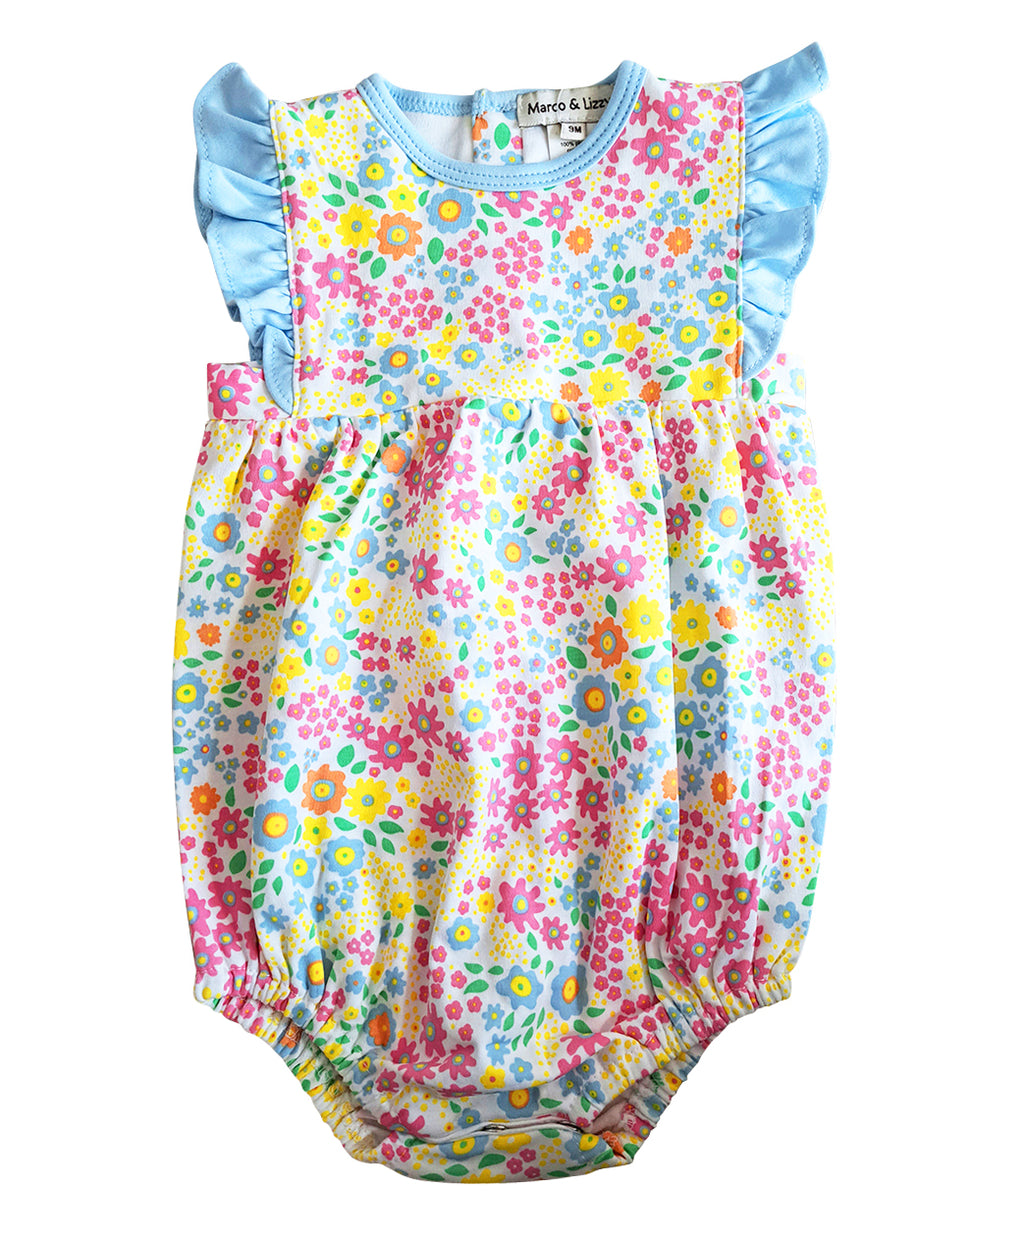 Baby Girl's Flower Print Romper - Little Threads Inc. Children's Clothing